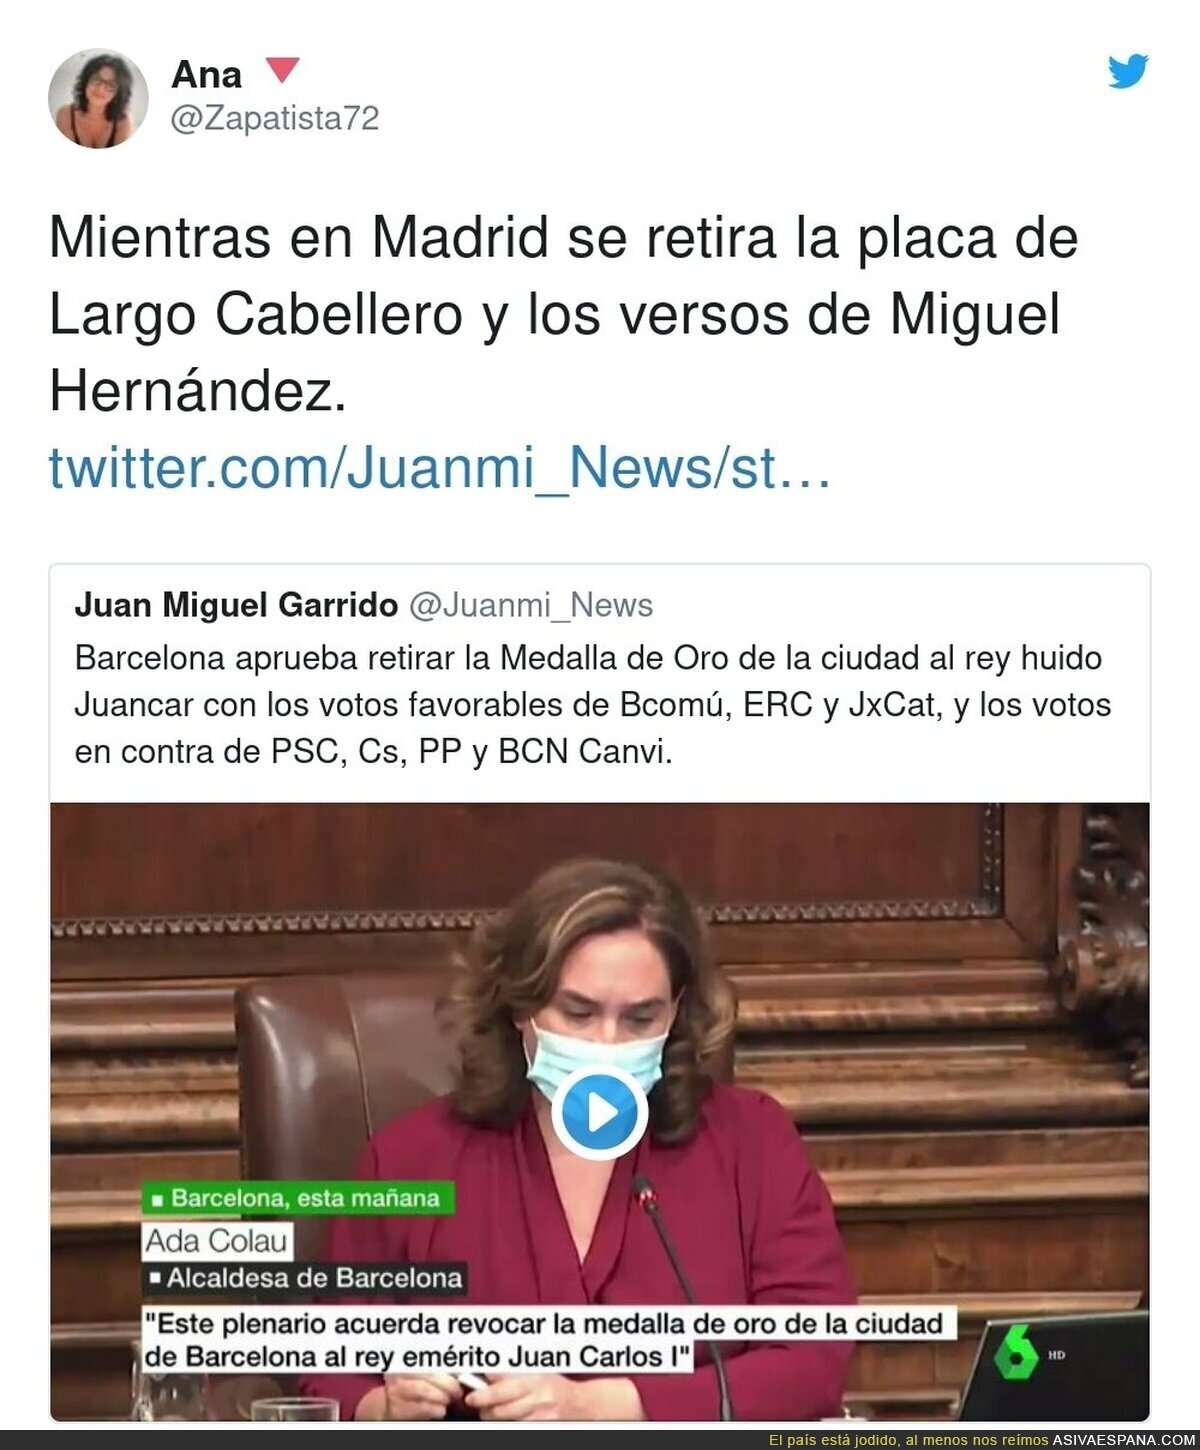 Juan Carlos I ya es repudiado en Barcelona